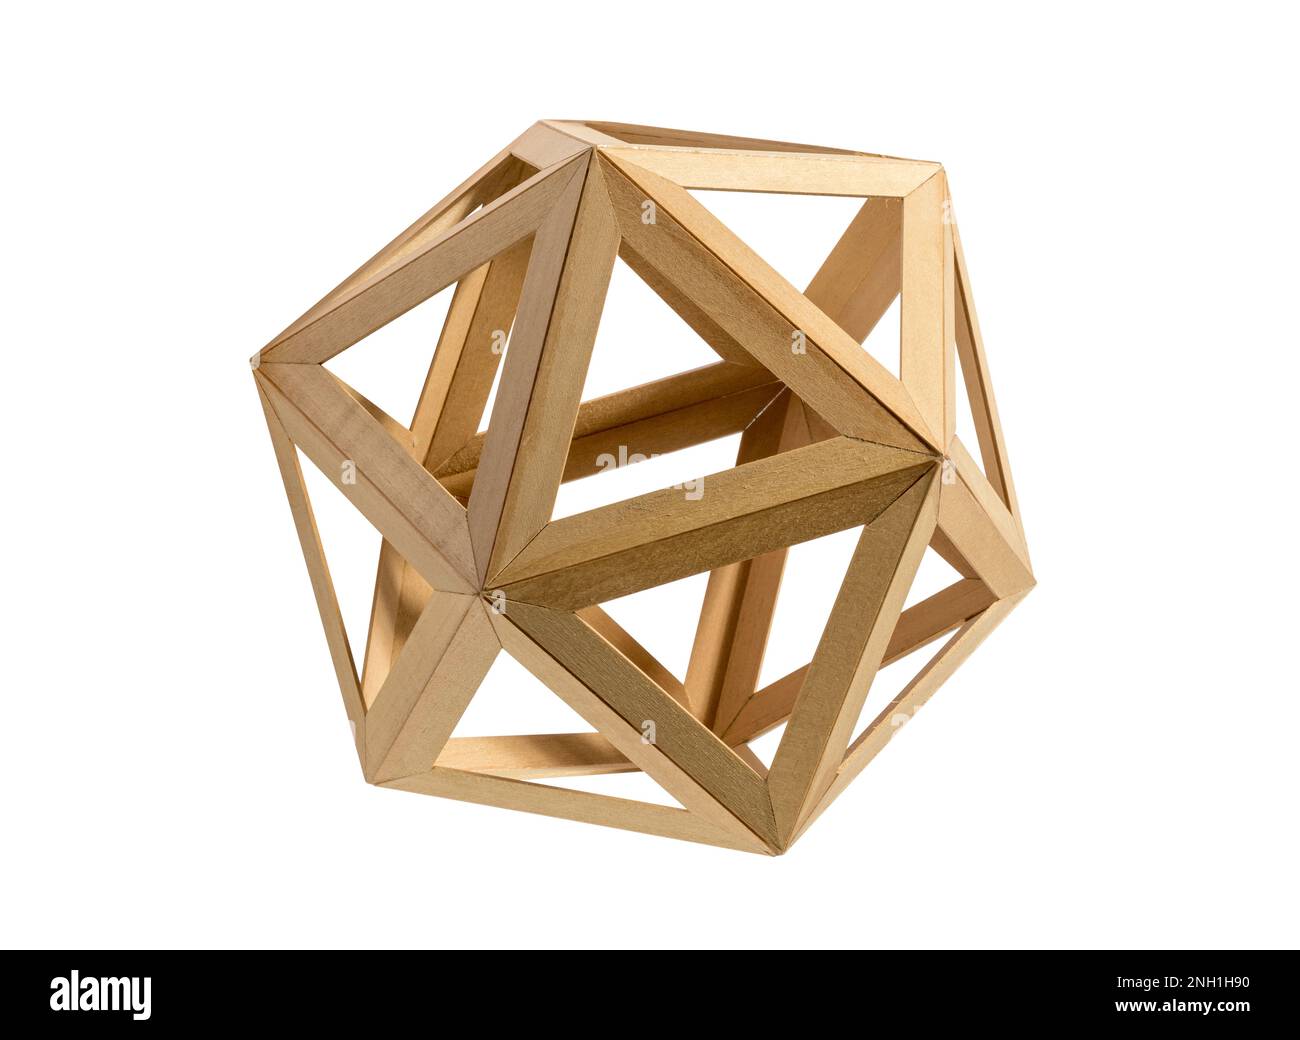 Icosaèdre de forme géométrique en bois clair avec des triangles isolés sur fond blanc Banque D'Images